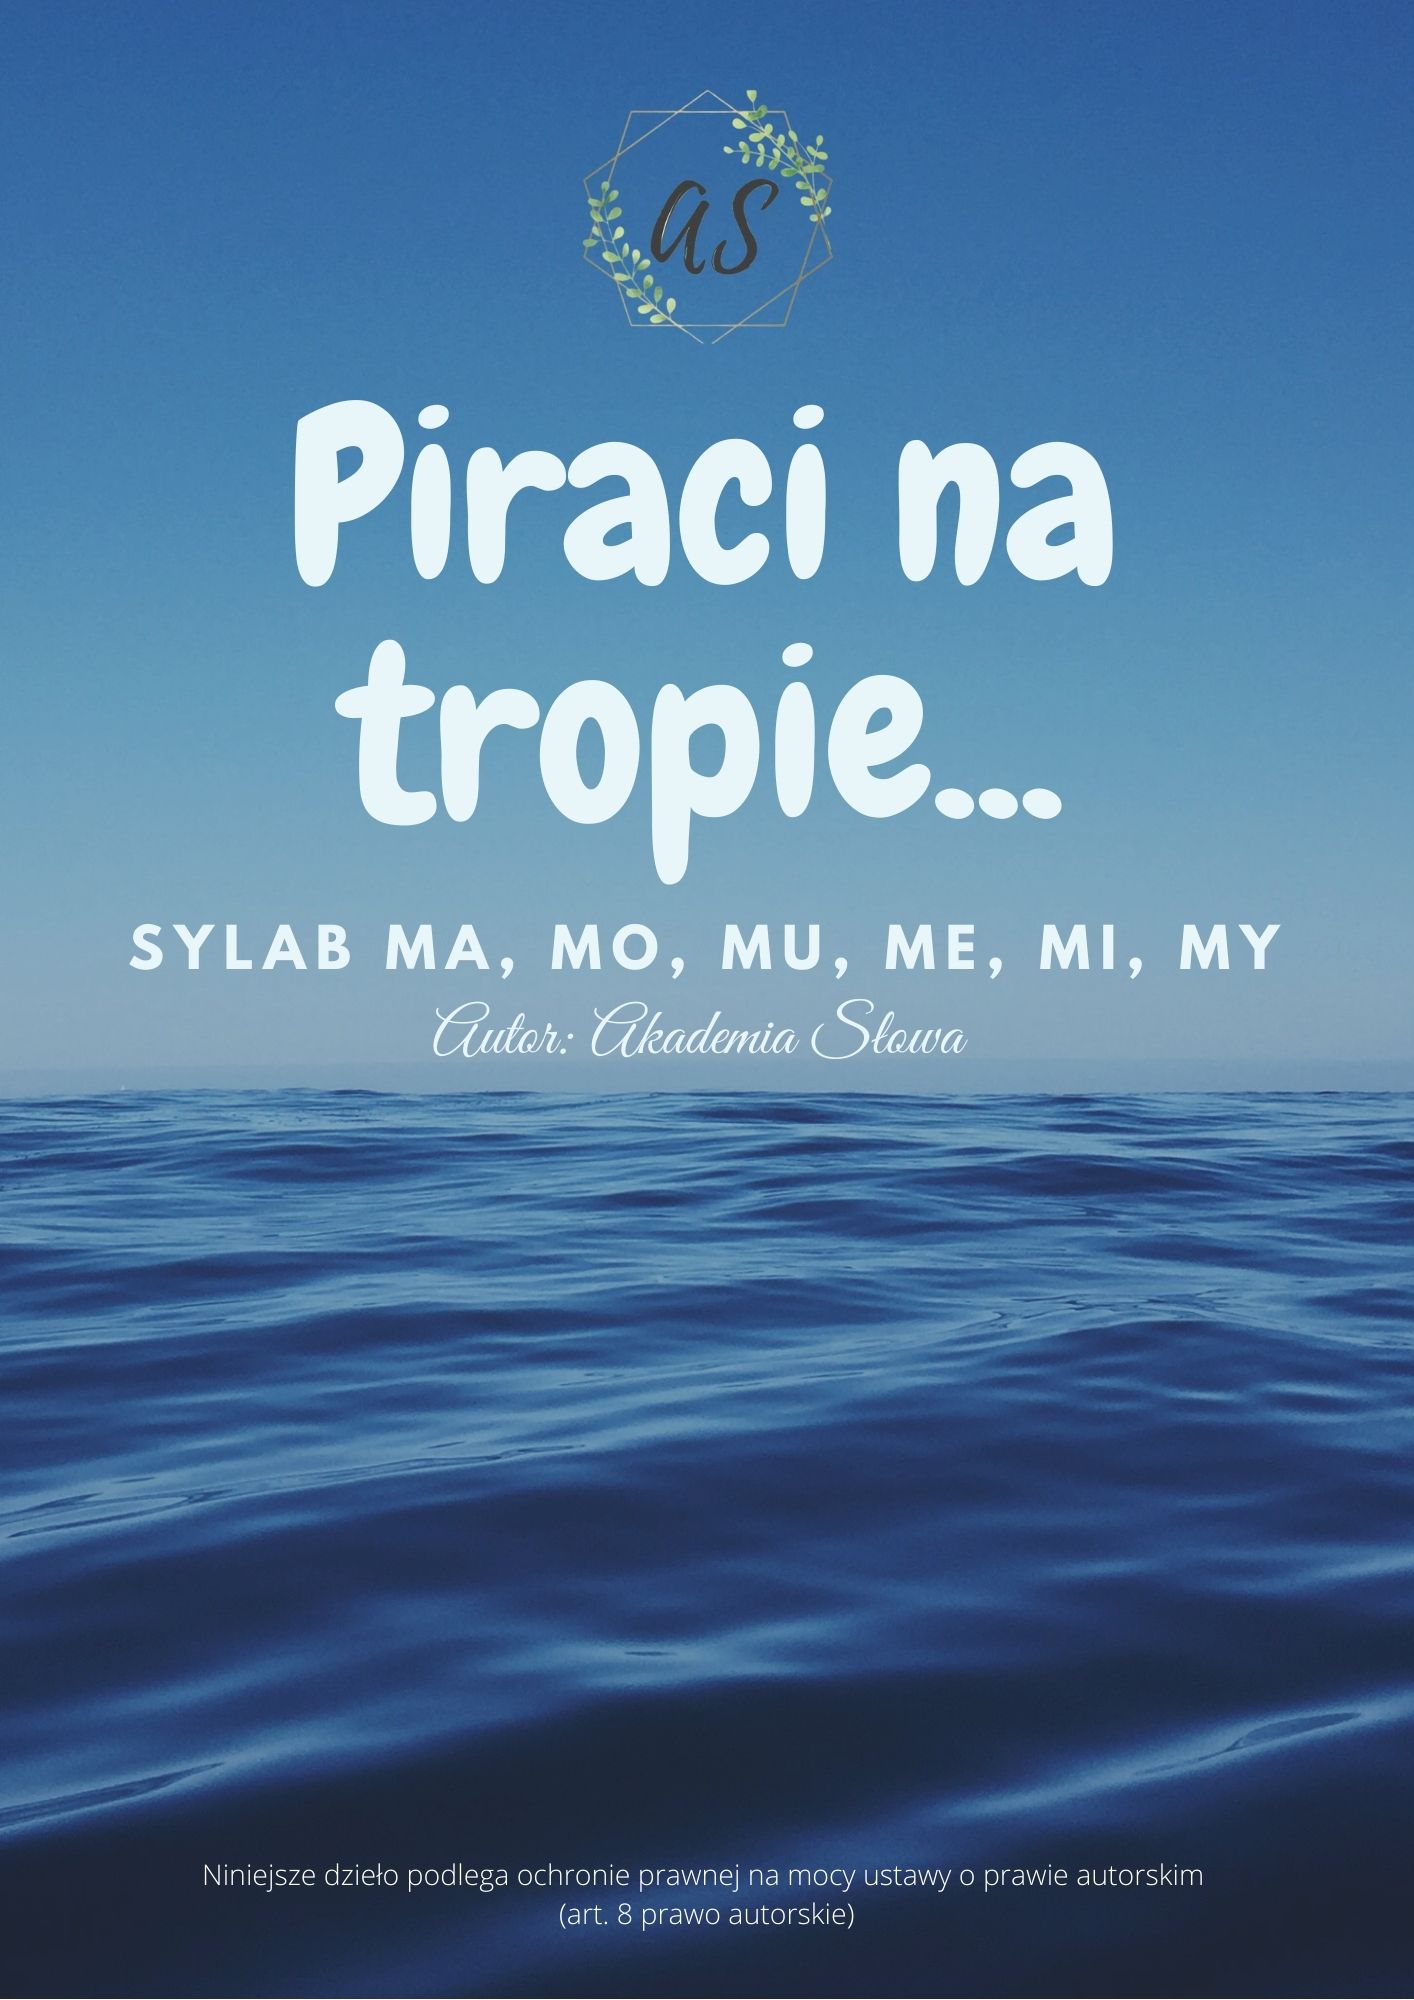 Piraci na tropie… (sylaby “M”)